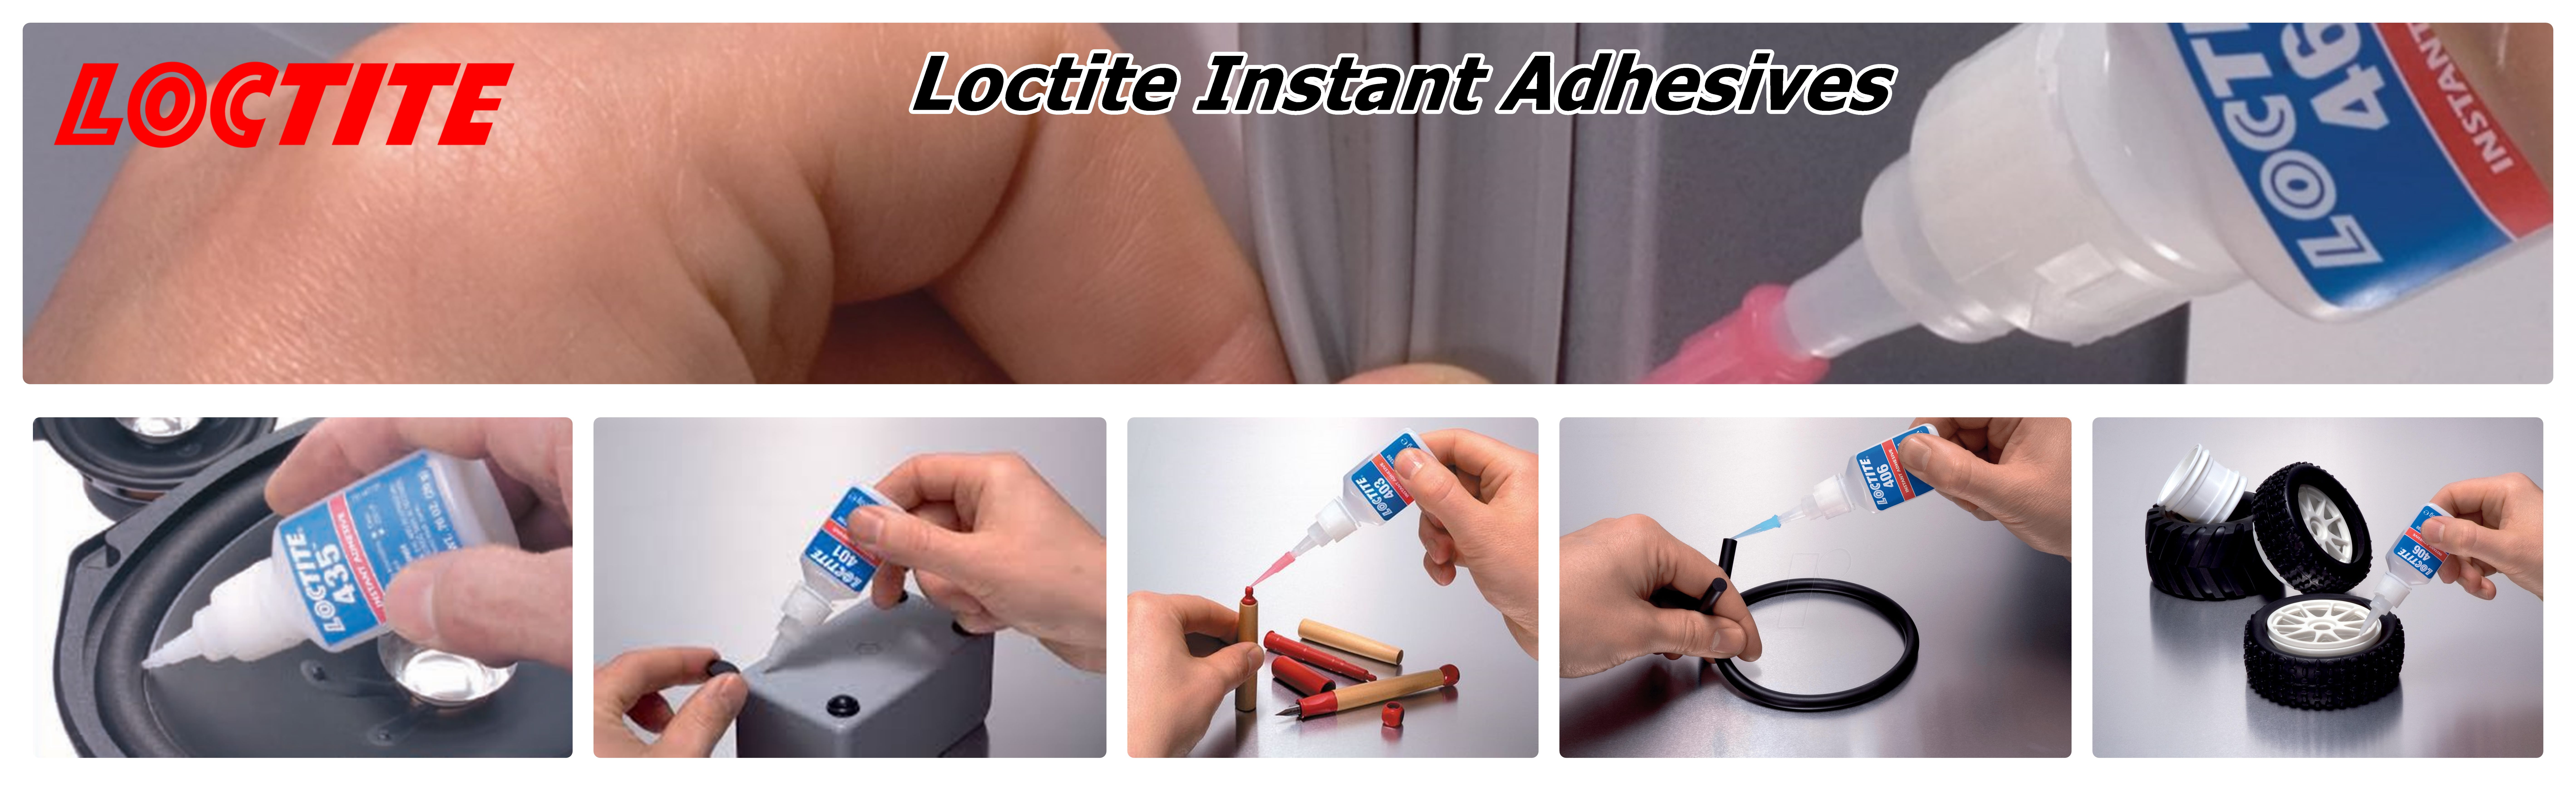 Loctite instant adhesive